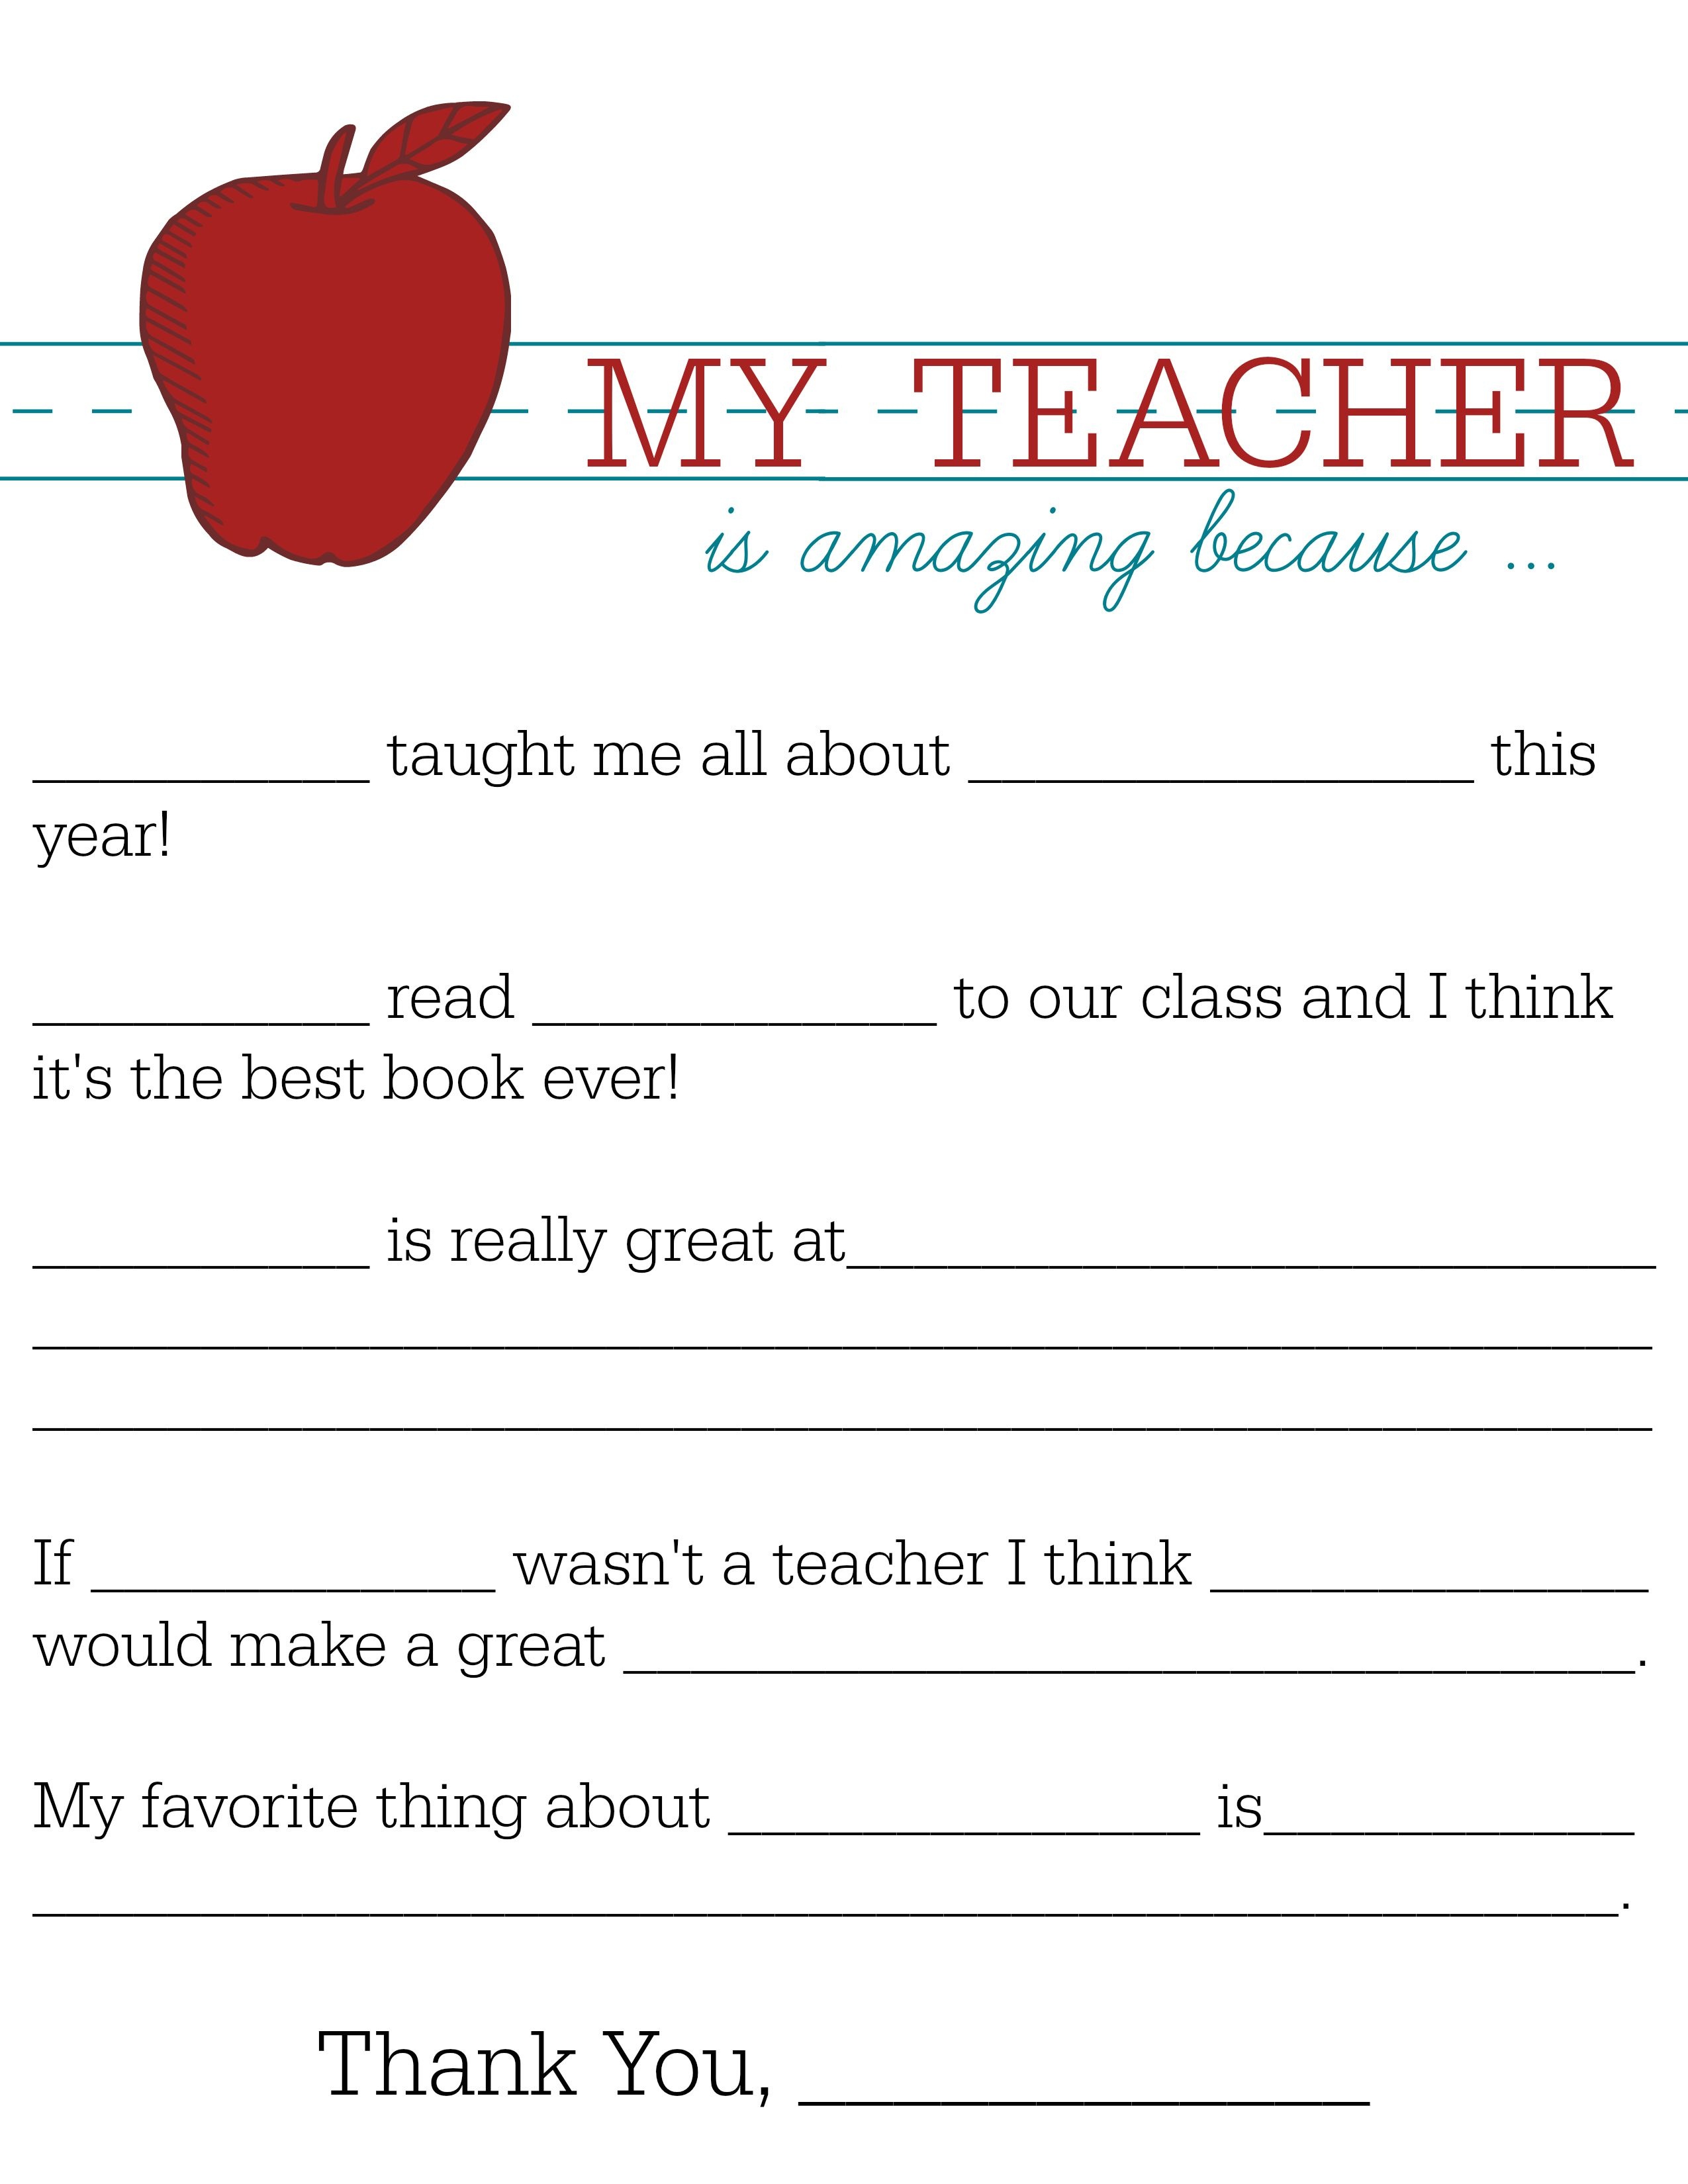 All About My Teacher | Parents: Raise A Reader Blog | Teacher - All About My Teacher Free Printable